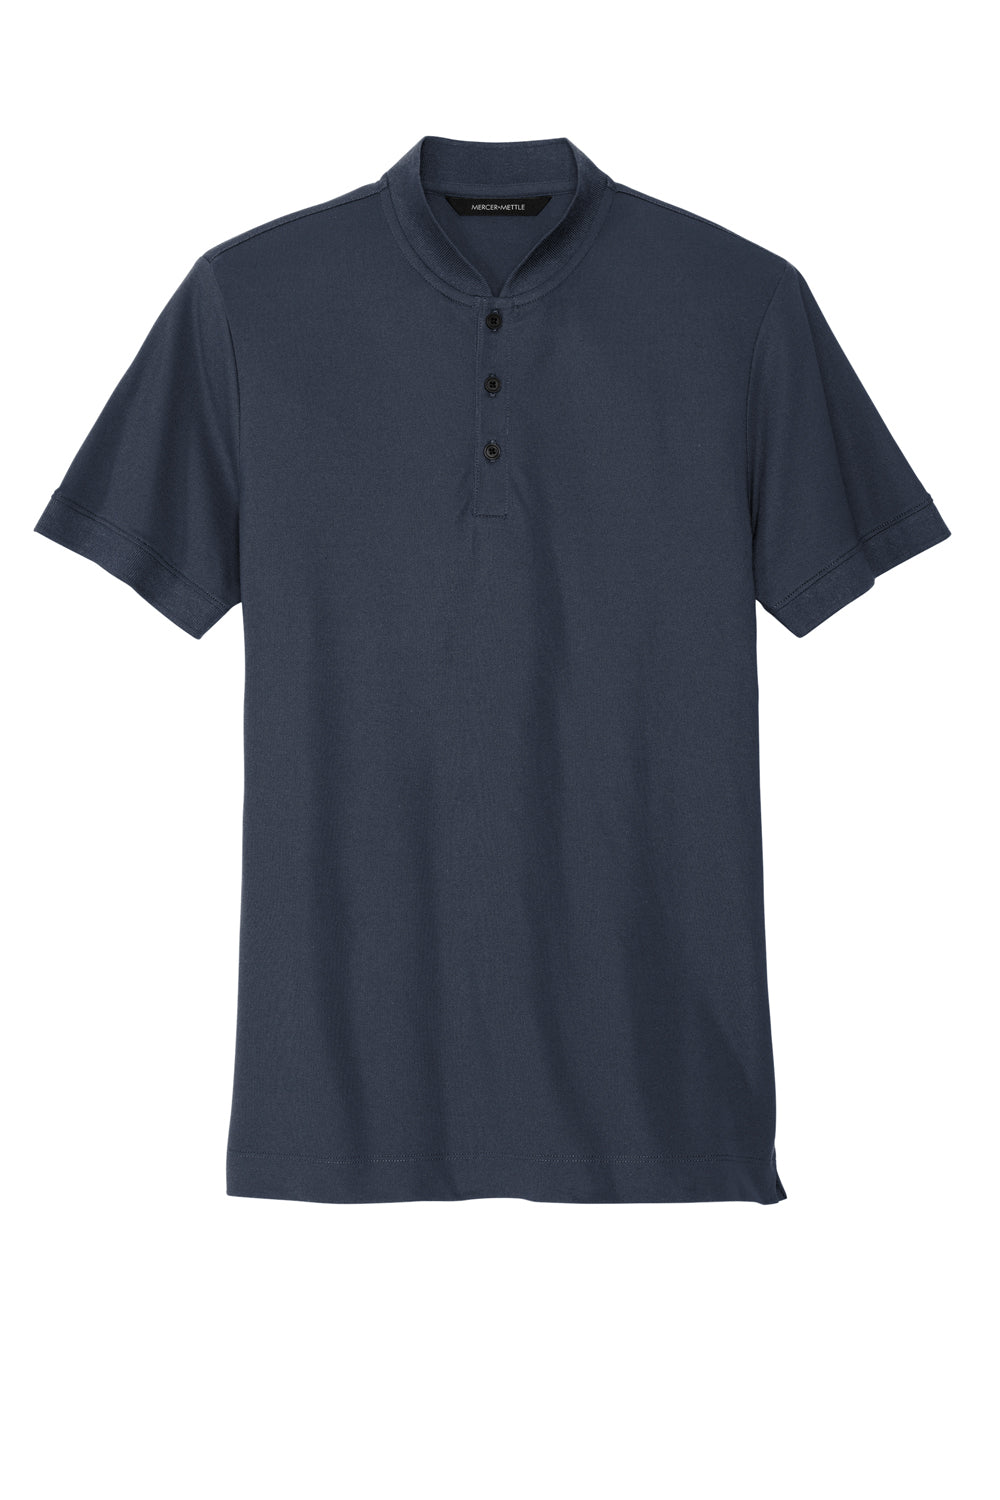 Mercer+Mettle MM1008 Stretch Pique Short Sleeve Henley T-Shirt Night Navy Blue Flat Front